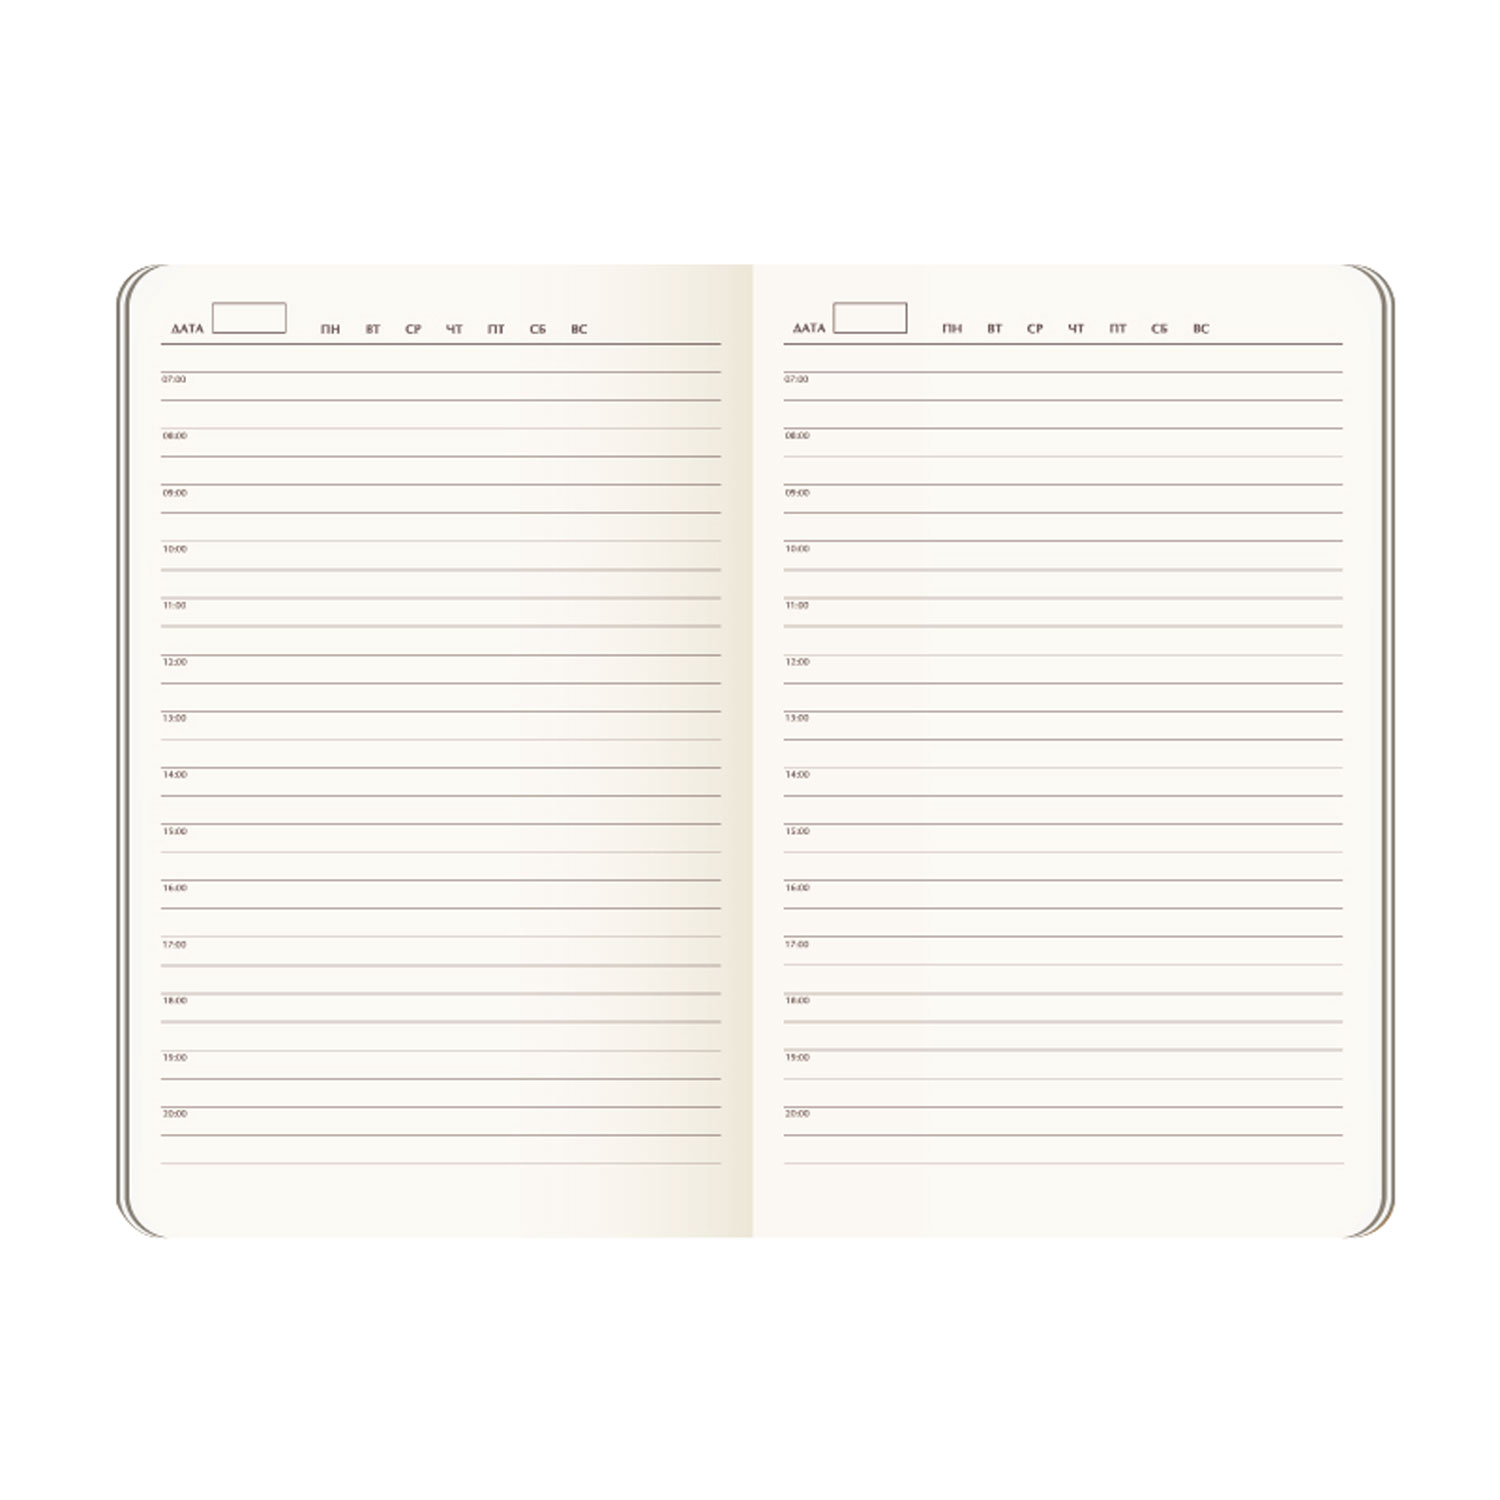 Ежедневник Chameleon BtoBook недатированный, черный/оранжевый (без упаковки, без стикера)